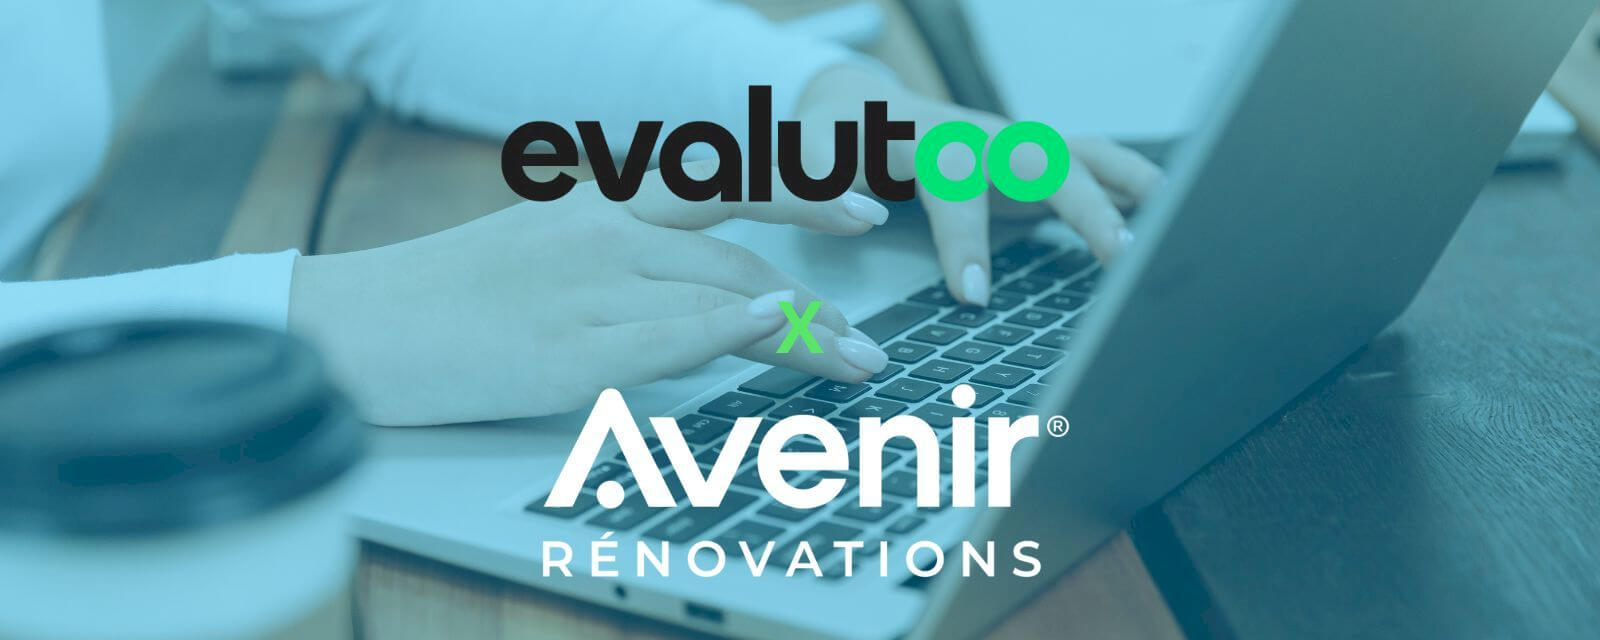 Avenir Rénovations et Evalutoo : un partenariat en faveur de la rénovation énergétique